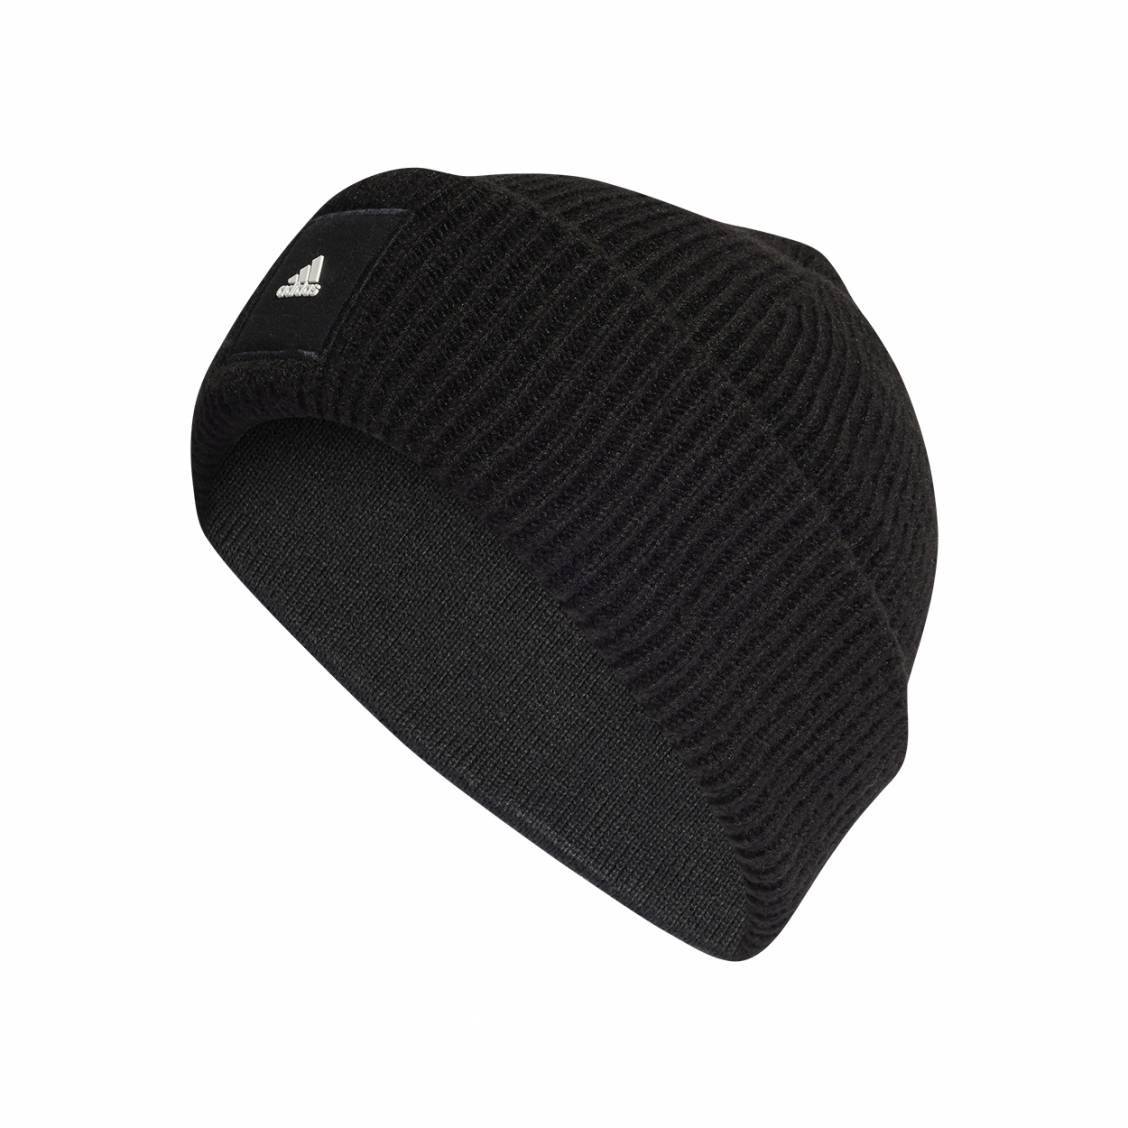 Bonnet adidas performance noir côtelé avec logo de le marque collé en  relief blanc sur le revers